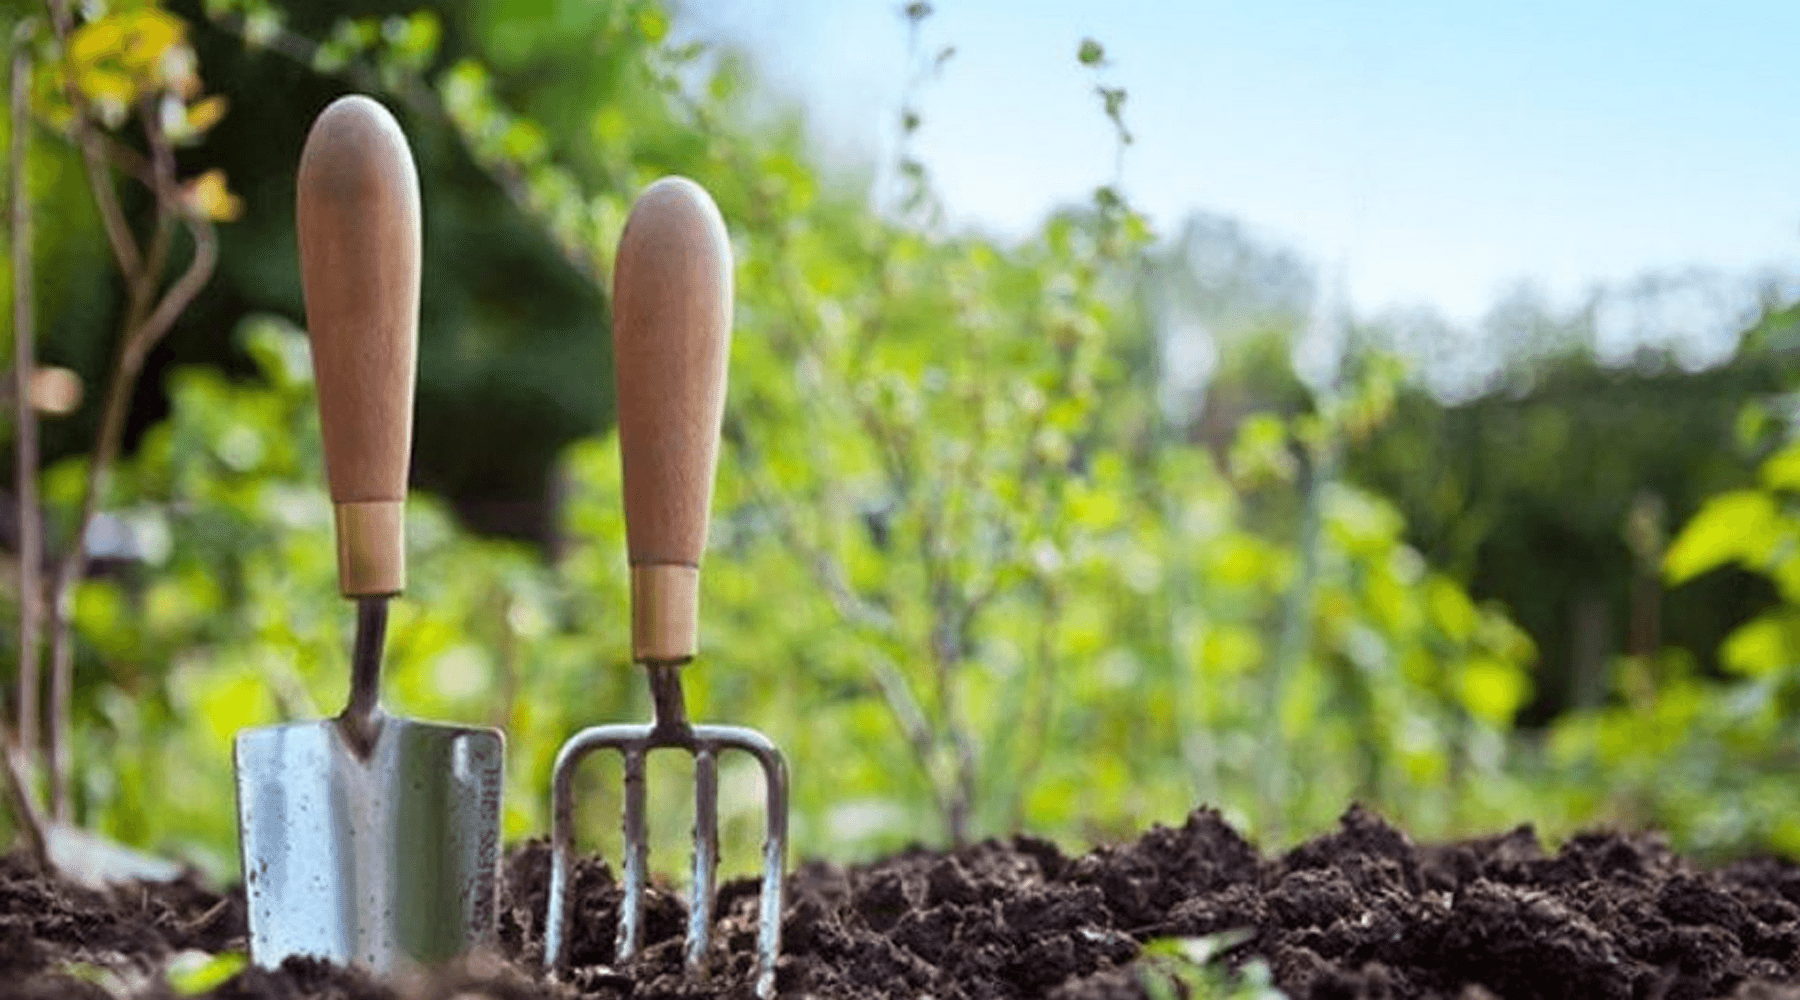 Gardening Tips for February